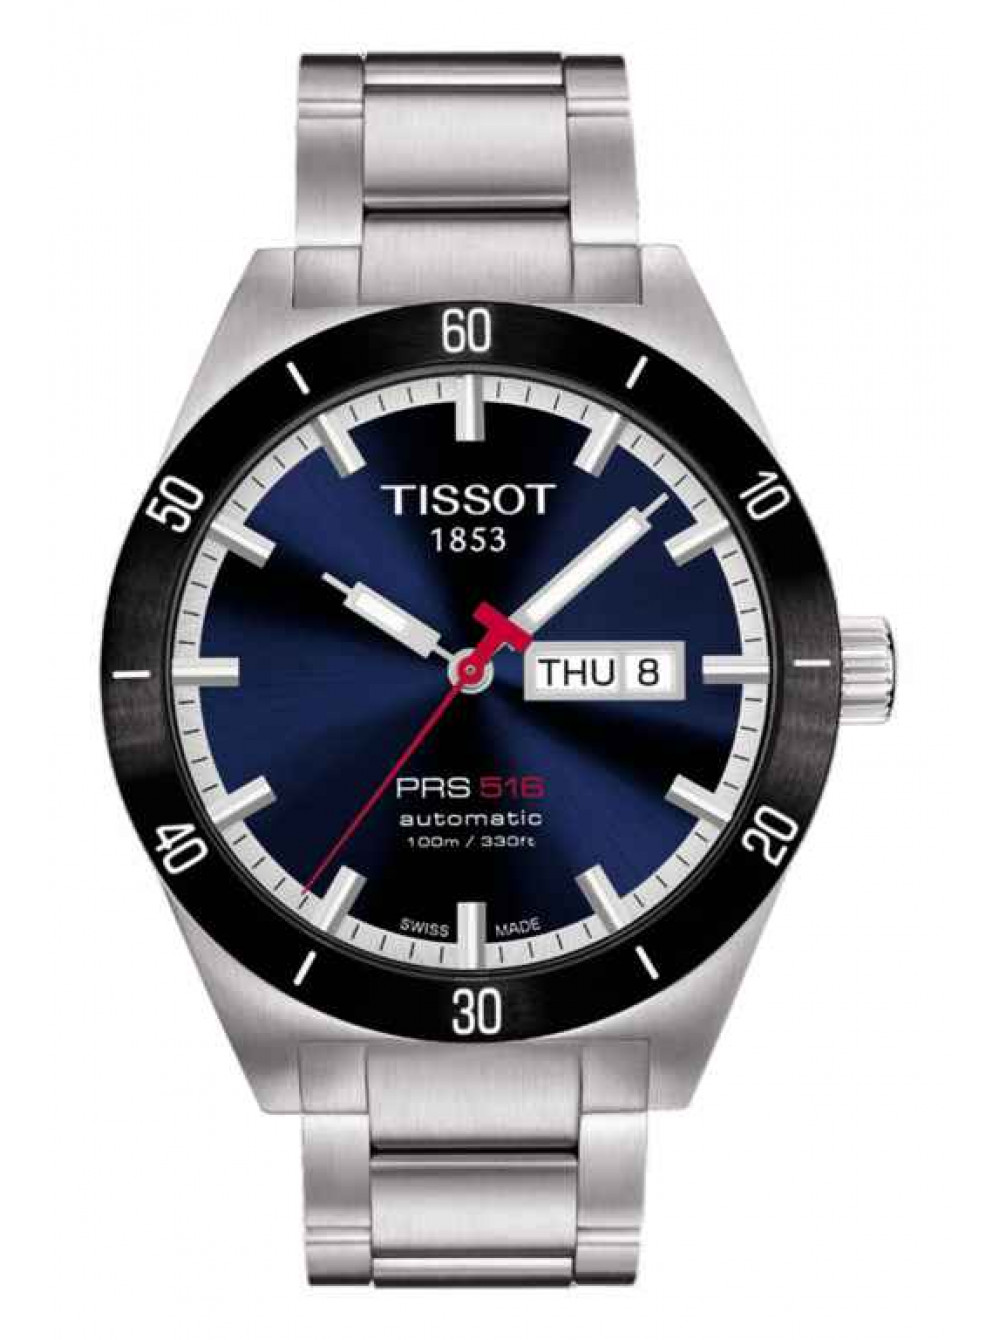 Часы среднего размера. Тиссот PRS 516. Часы Tissot PRS 516 Automatic. Часы Tissot t-Sport PRS 516. Часы тиссот PRS 516 мужские.